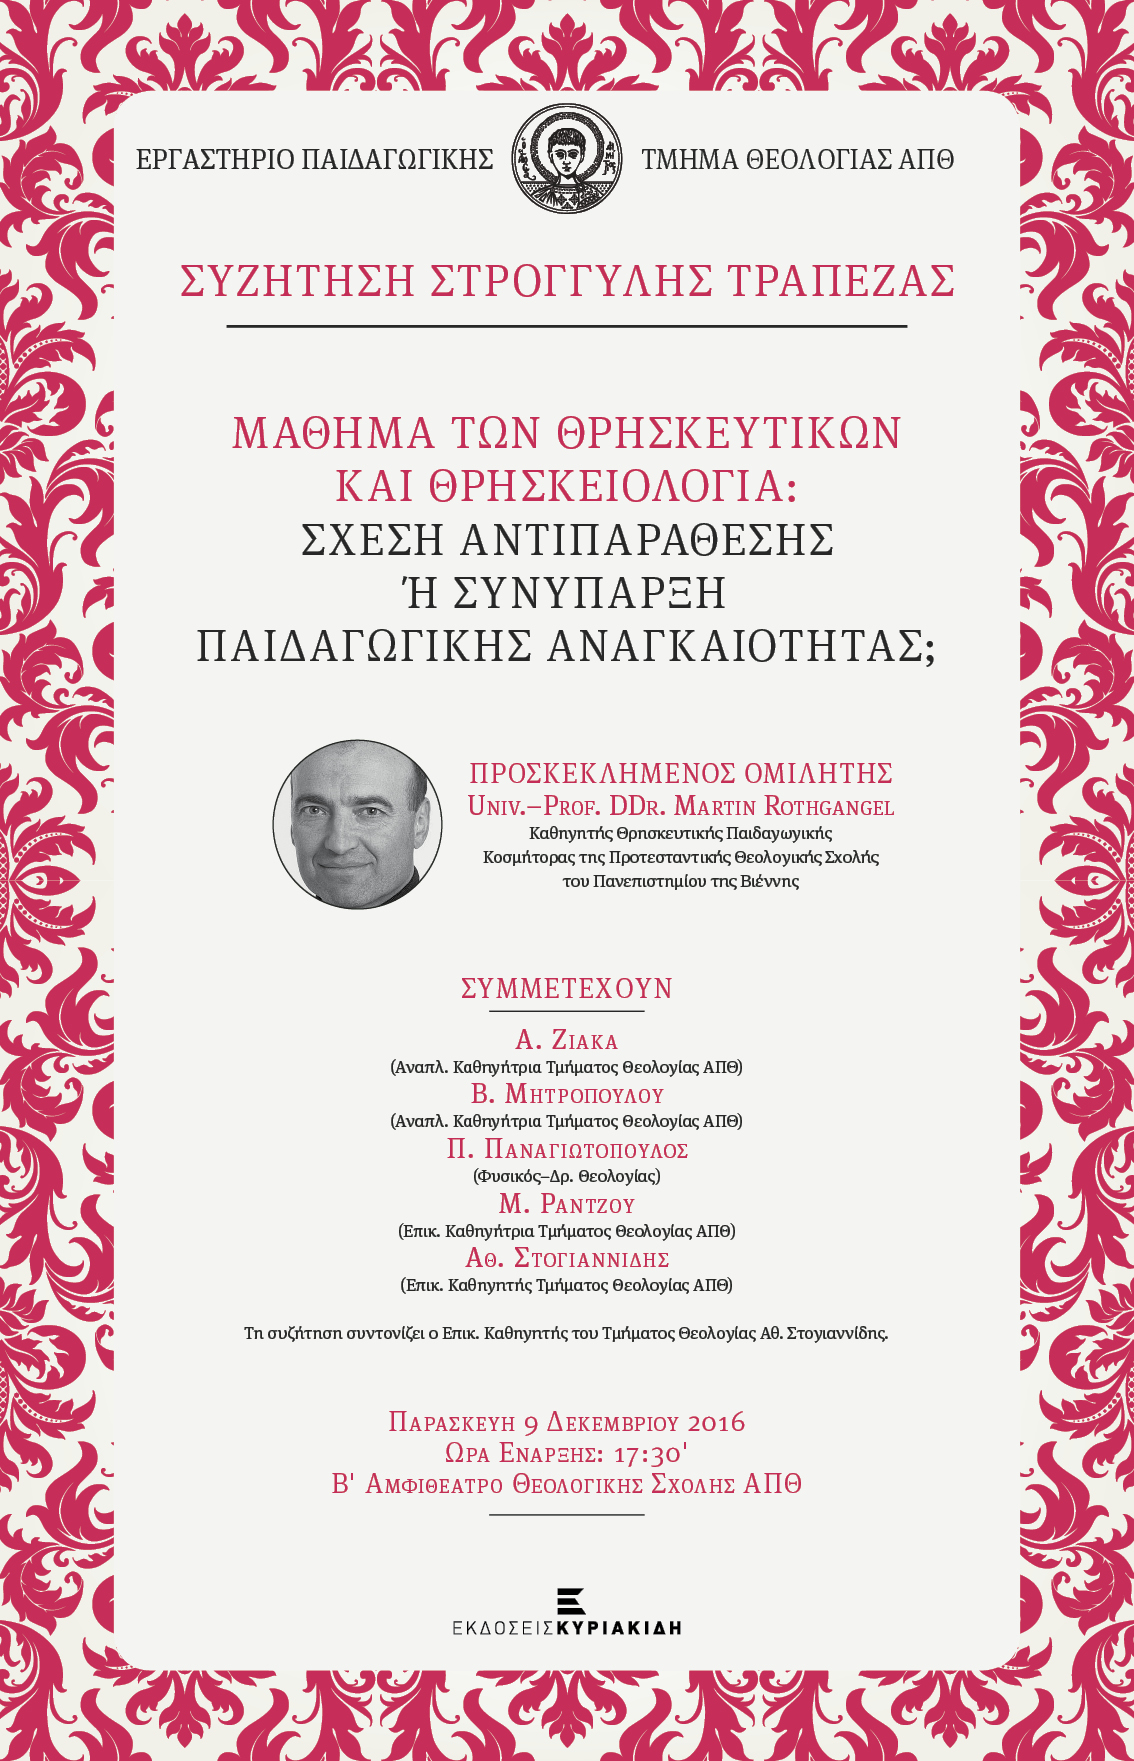 Poster Syzitisi Stroggylis Trapezas